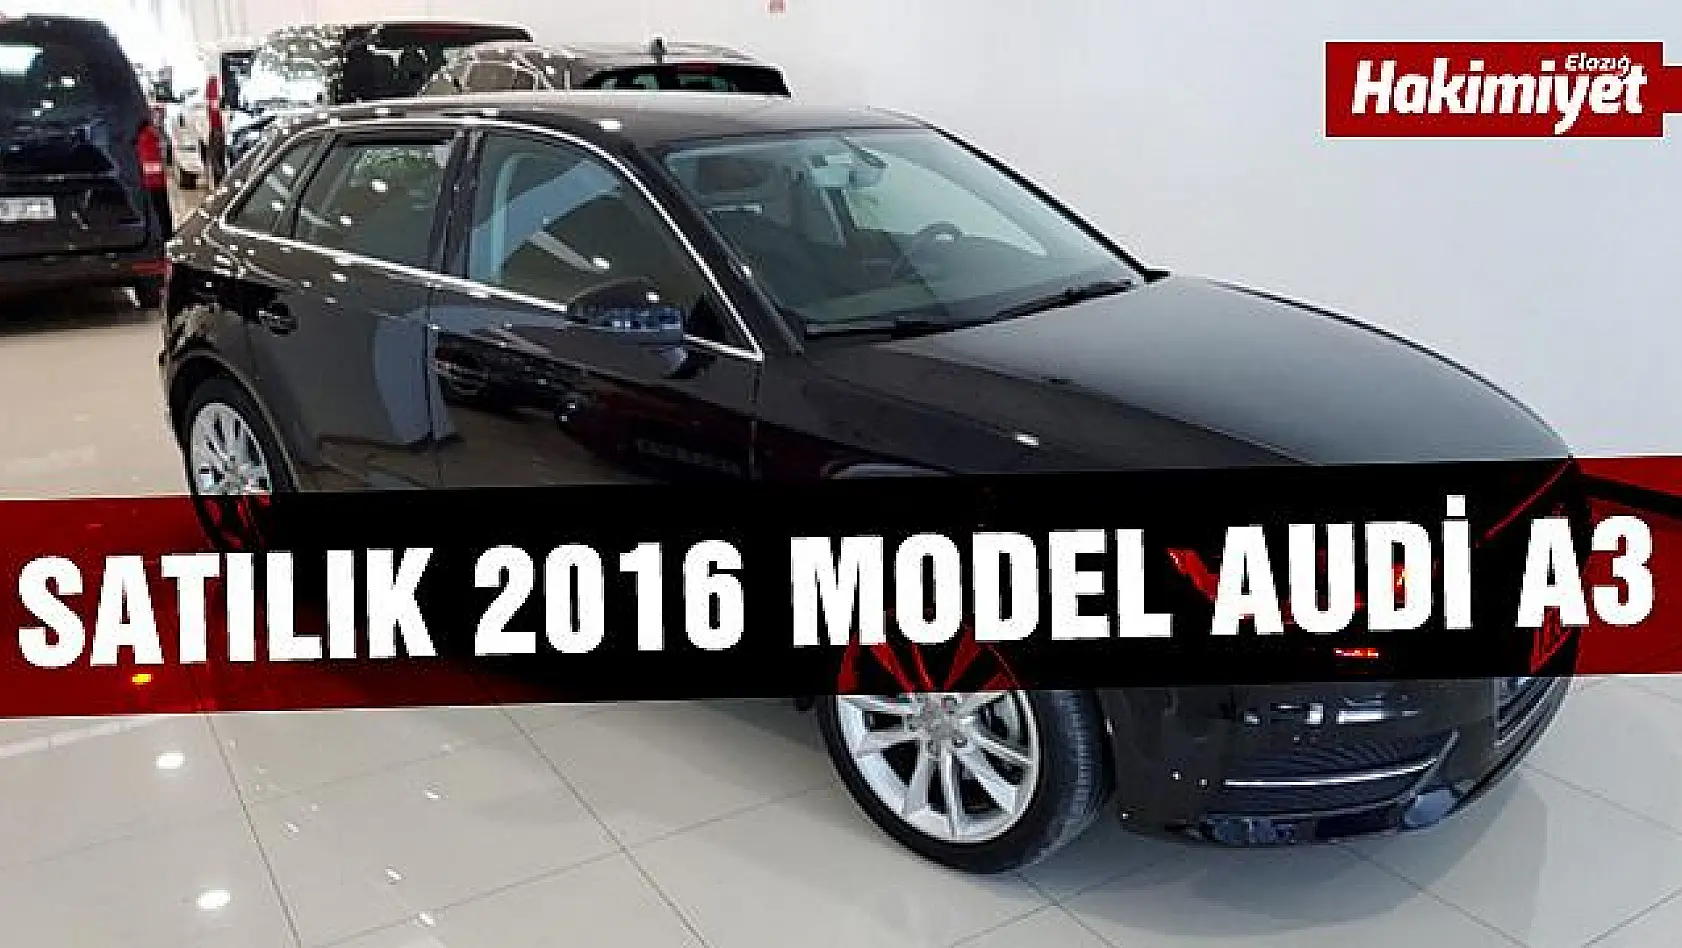 Satılık 2016 model Audi A3